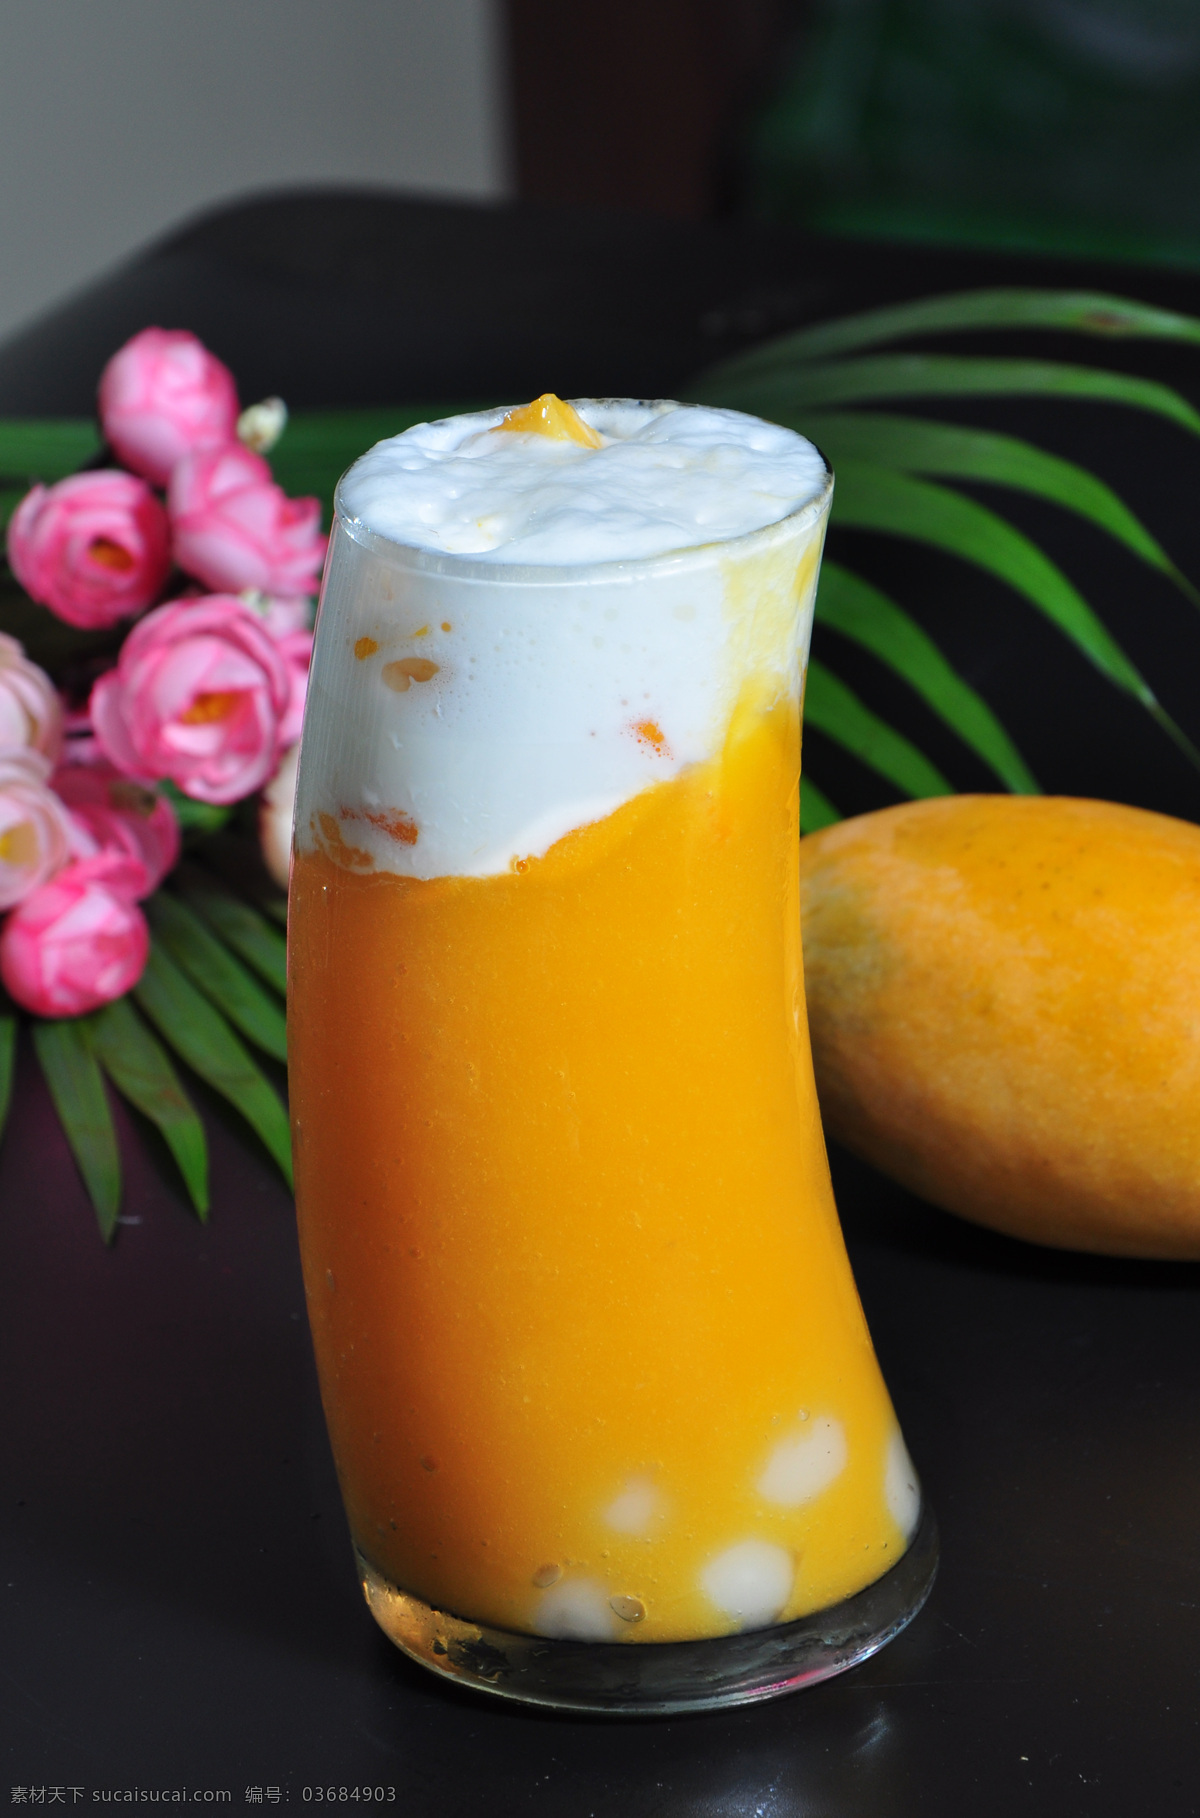 芒果牛奶汁 芒果饮料 饮料 牛奶汁 牛奶芒果 传统美食 餐饮美食